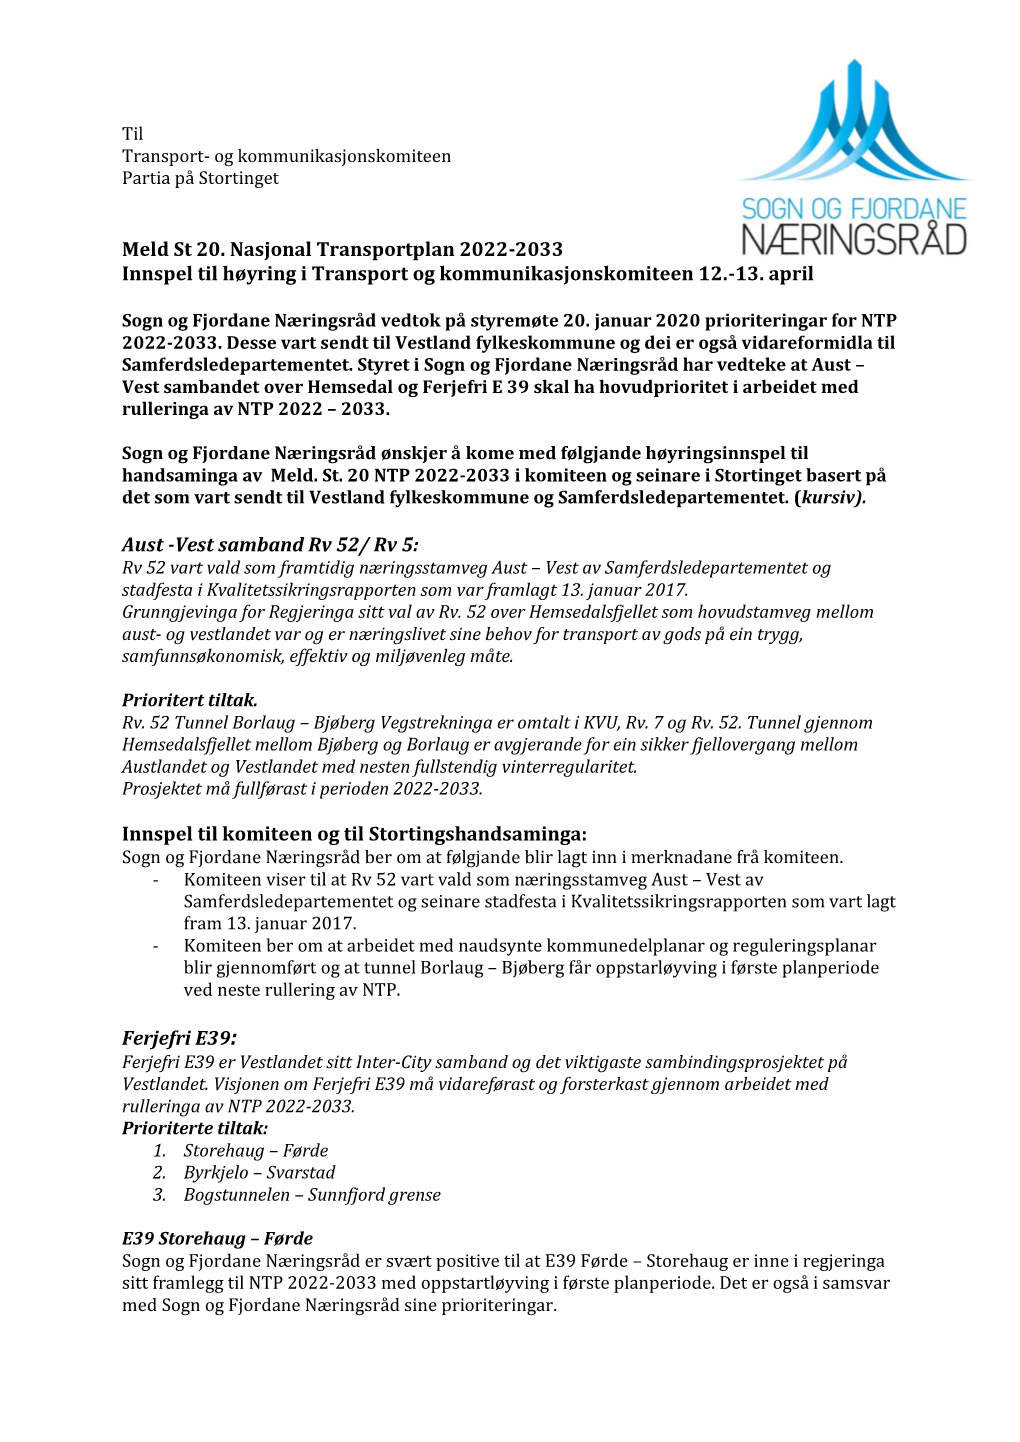 Meld St 20. Nasjonal Transportplan 2022-2033 Innspel Til Høyring I Transport Og Kommunikasjonskomiteen 12.-13